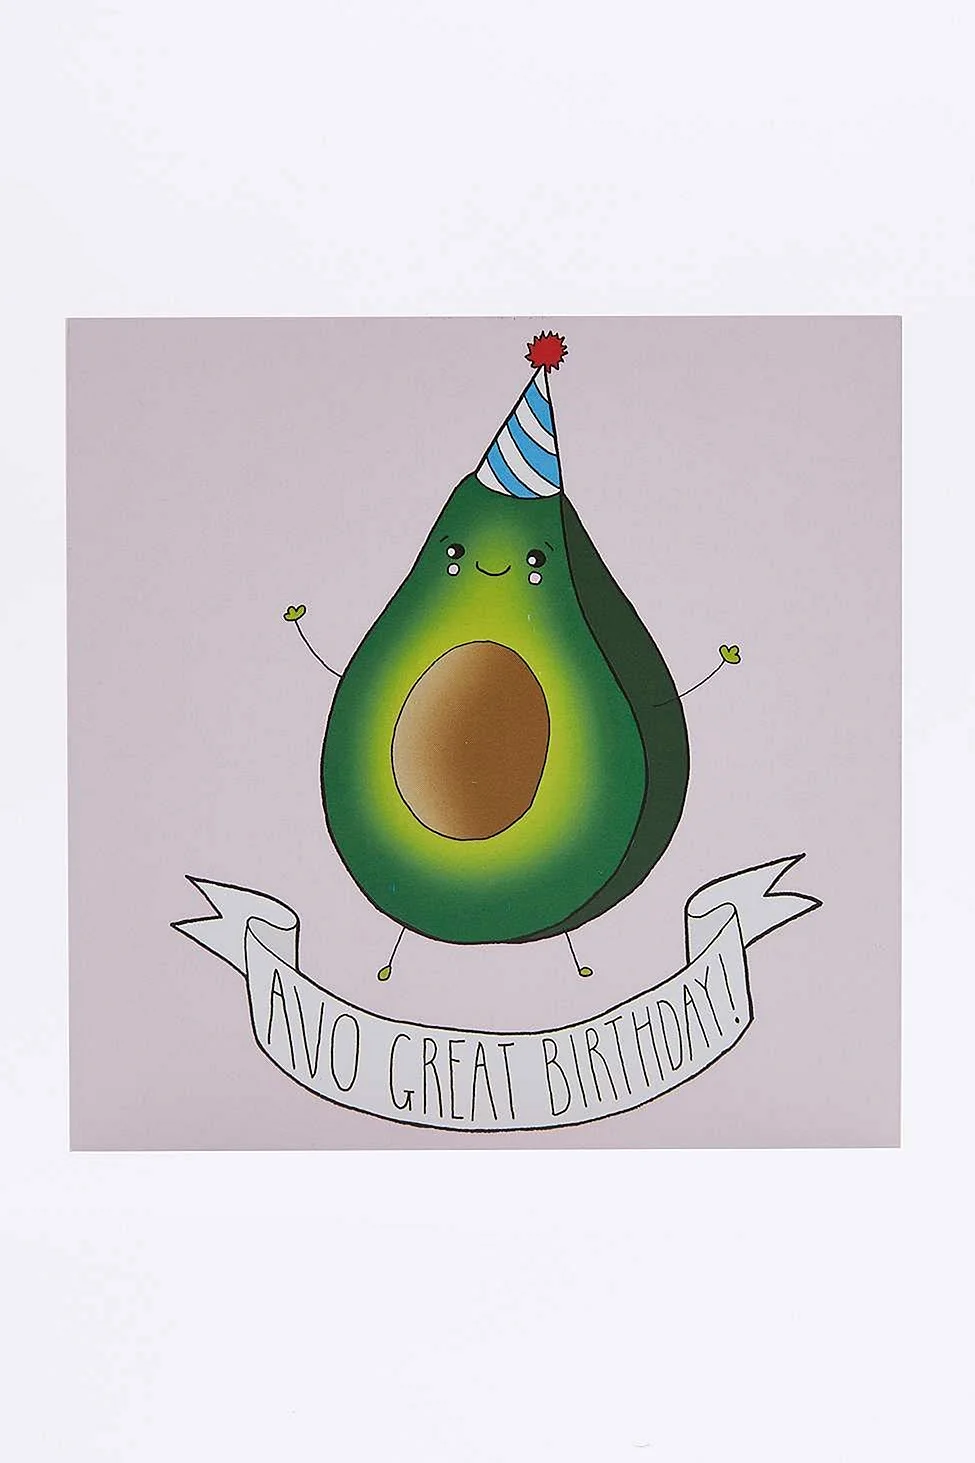 С днем рождения авокадо